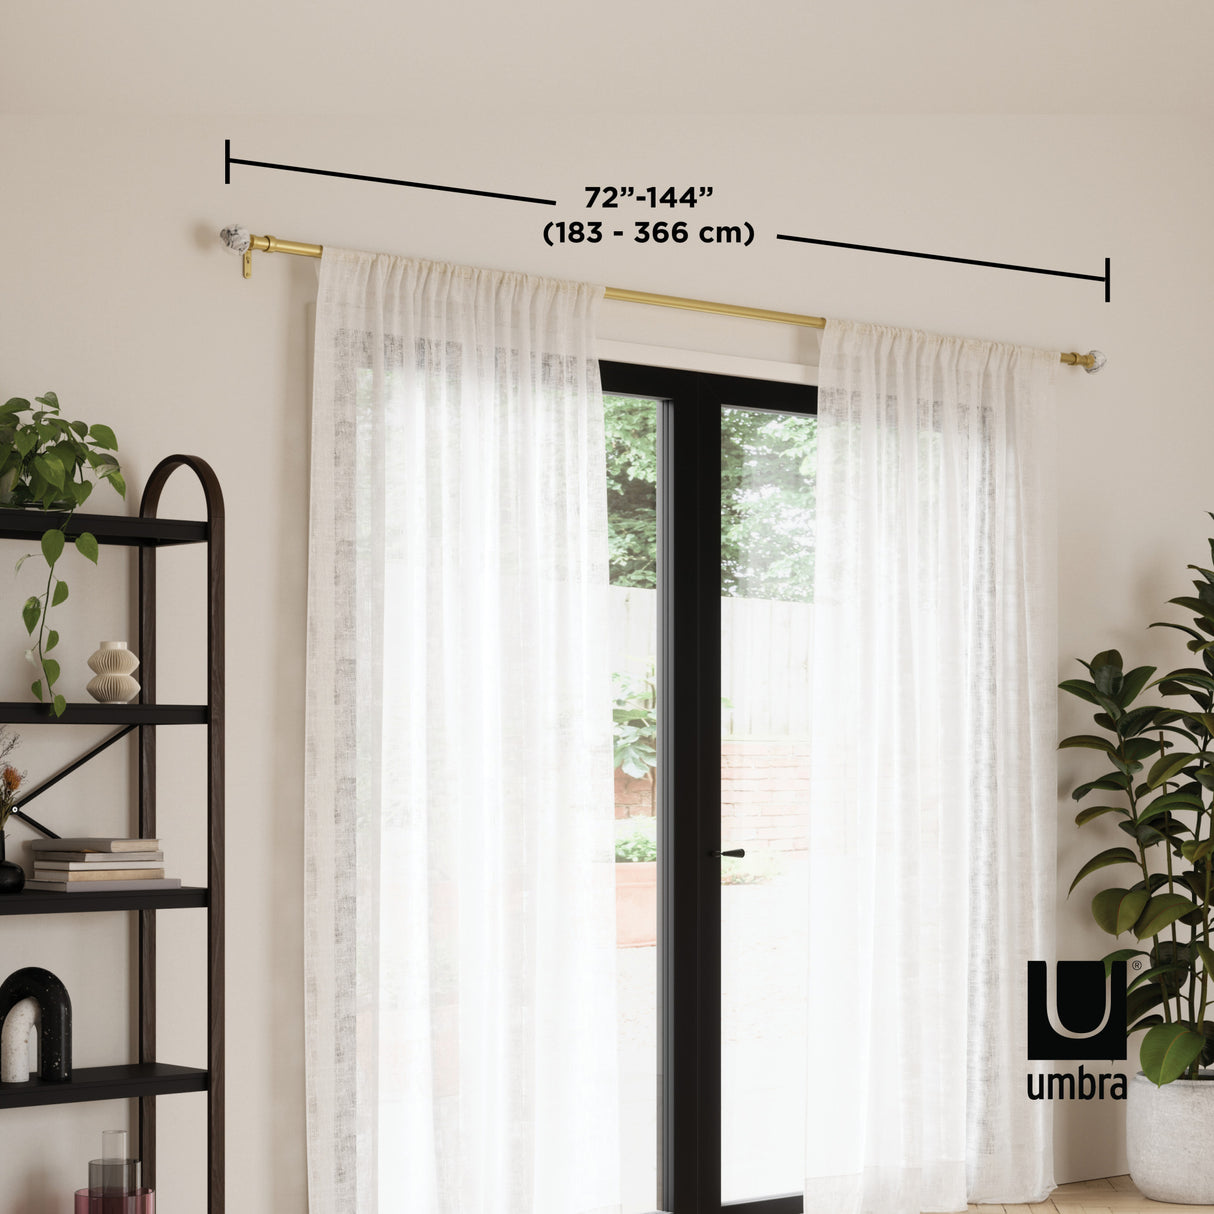 Single Curtain Rods | color: Eco-Friendly Gold | size: 72-144" (183-366 cm) | diameter: 1" (2.5 cm)